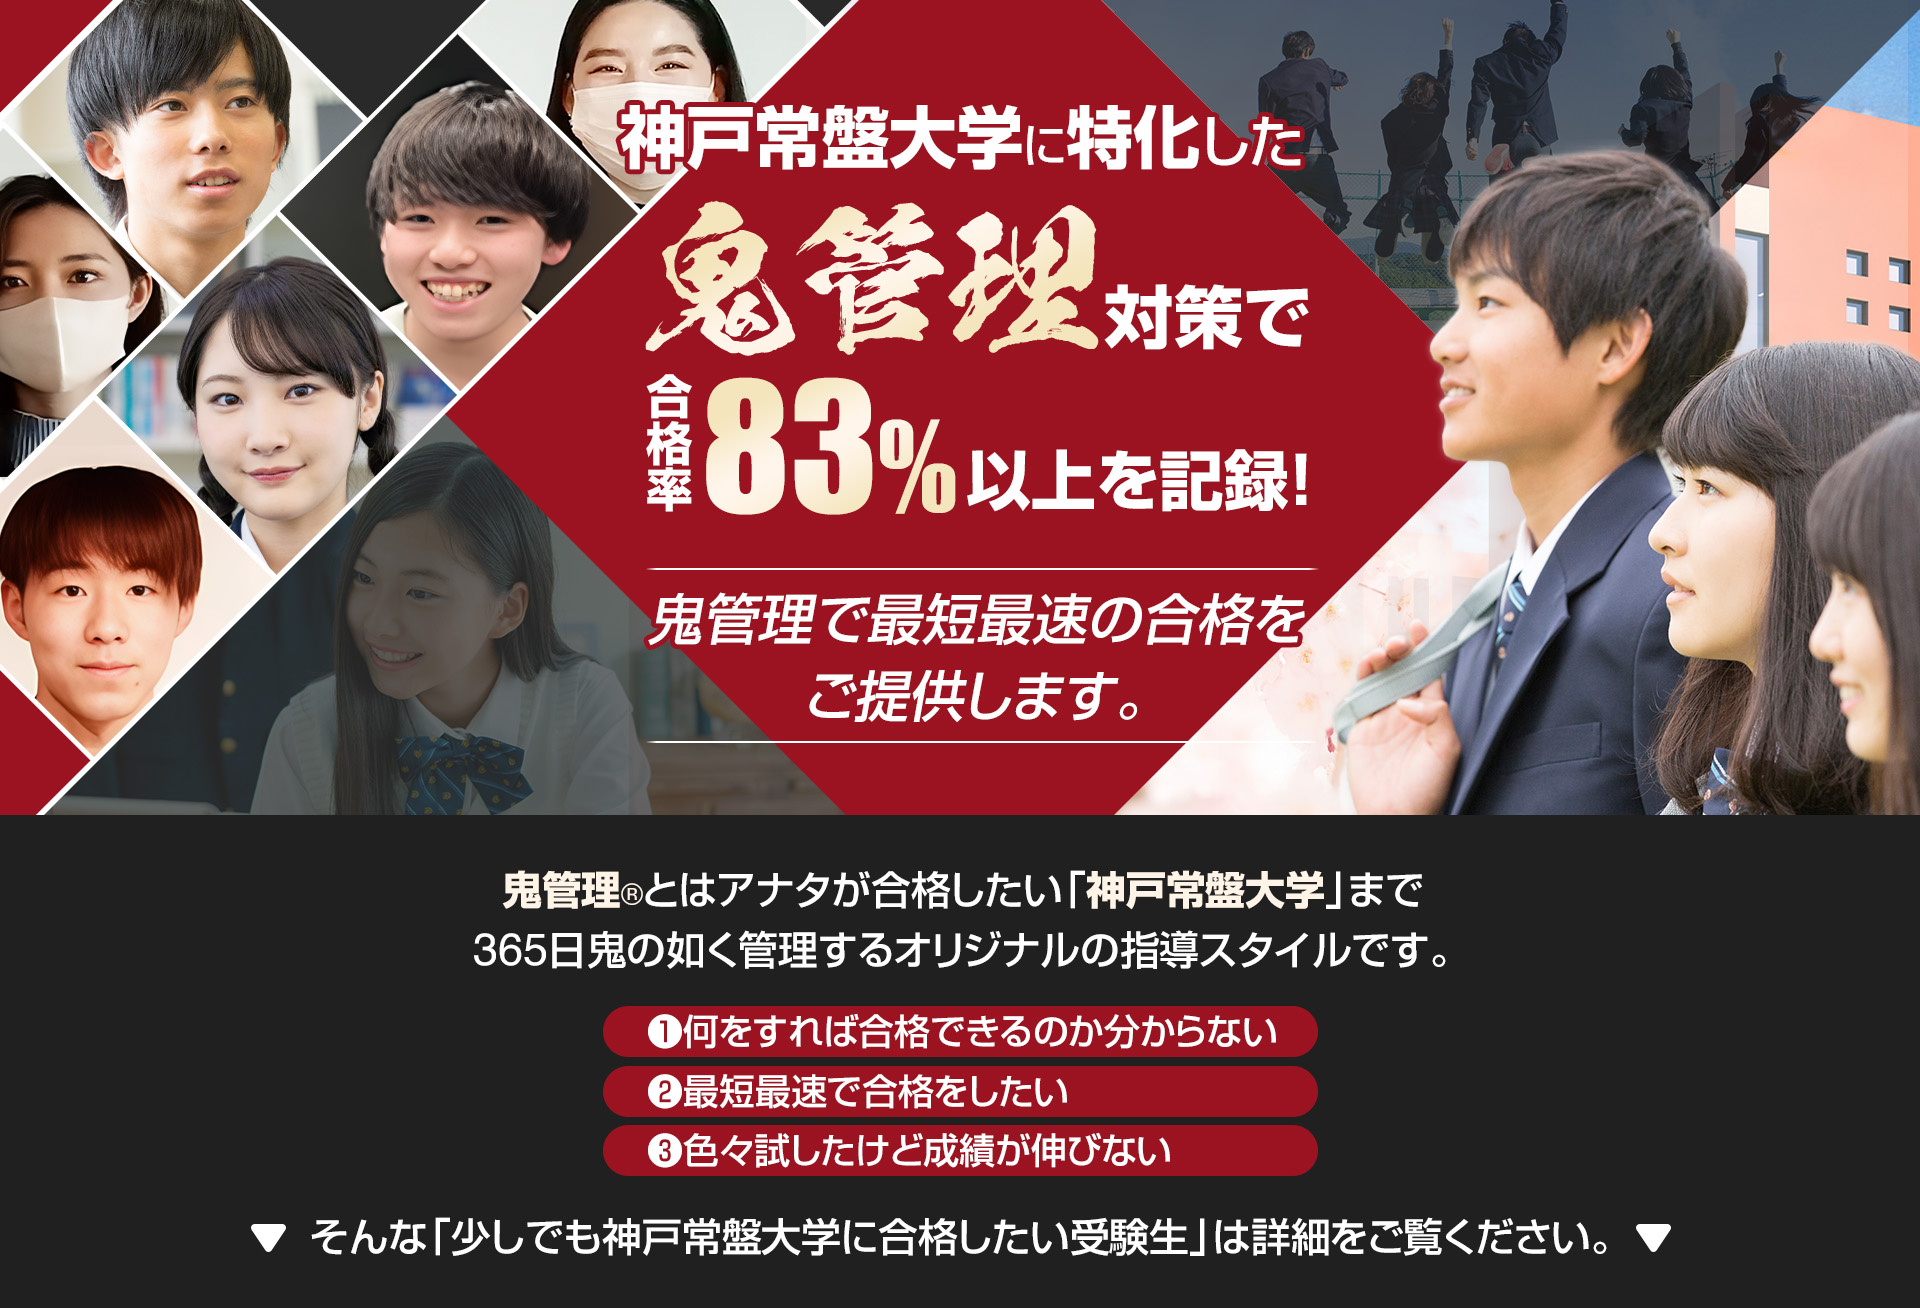 神戸常盤大学に特化した鬼管理対策で合格率83％以上を記録。鬼管理でアナタが合格したい神戸常盤大学への最短最速の合格を提供します。